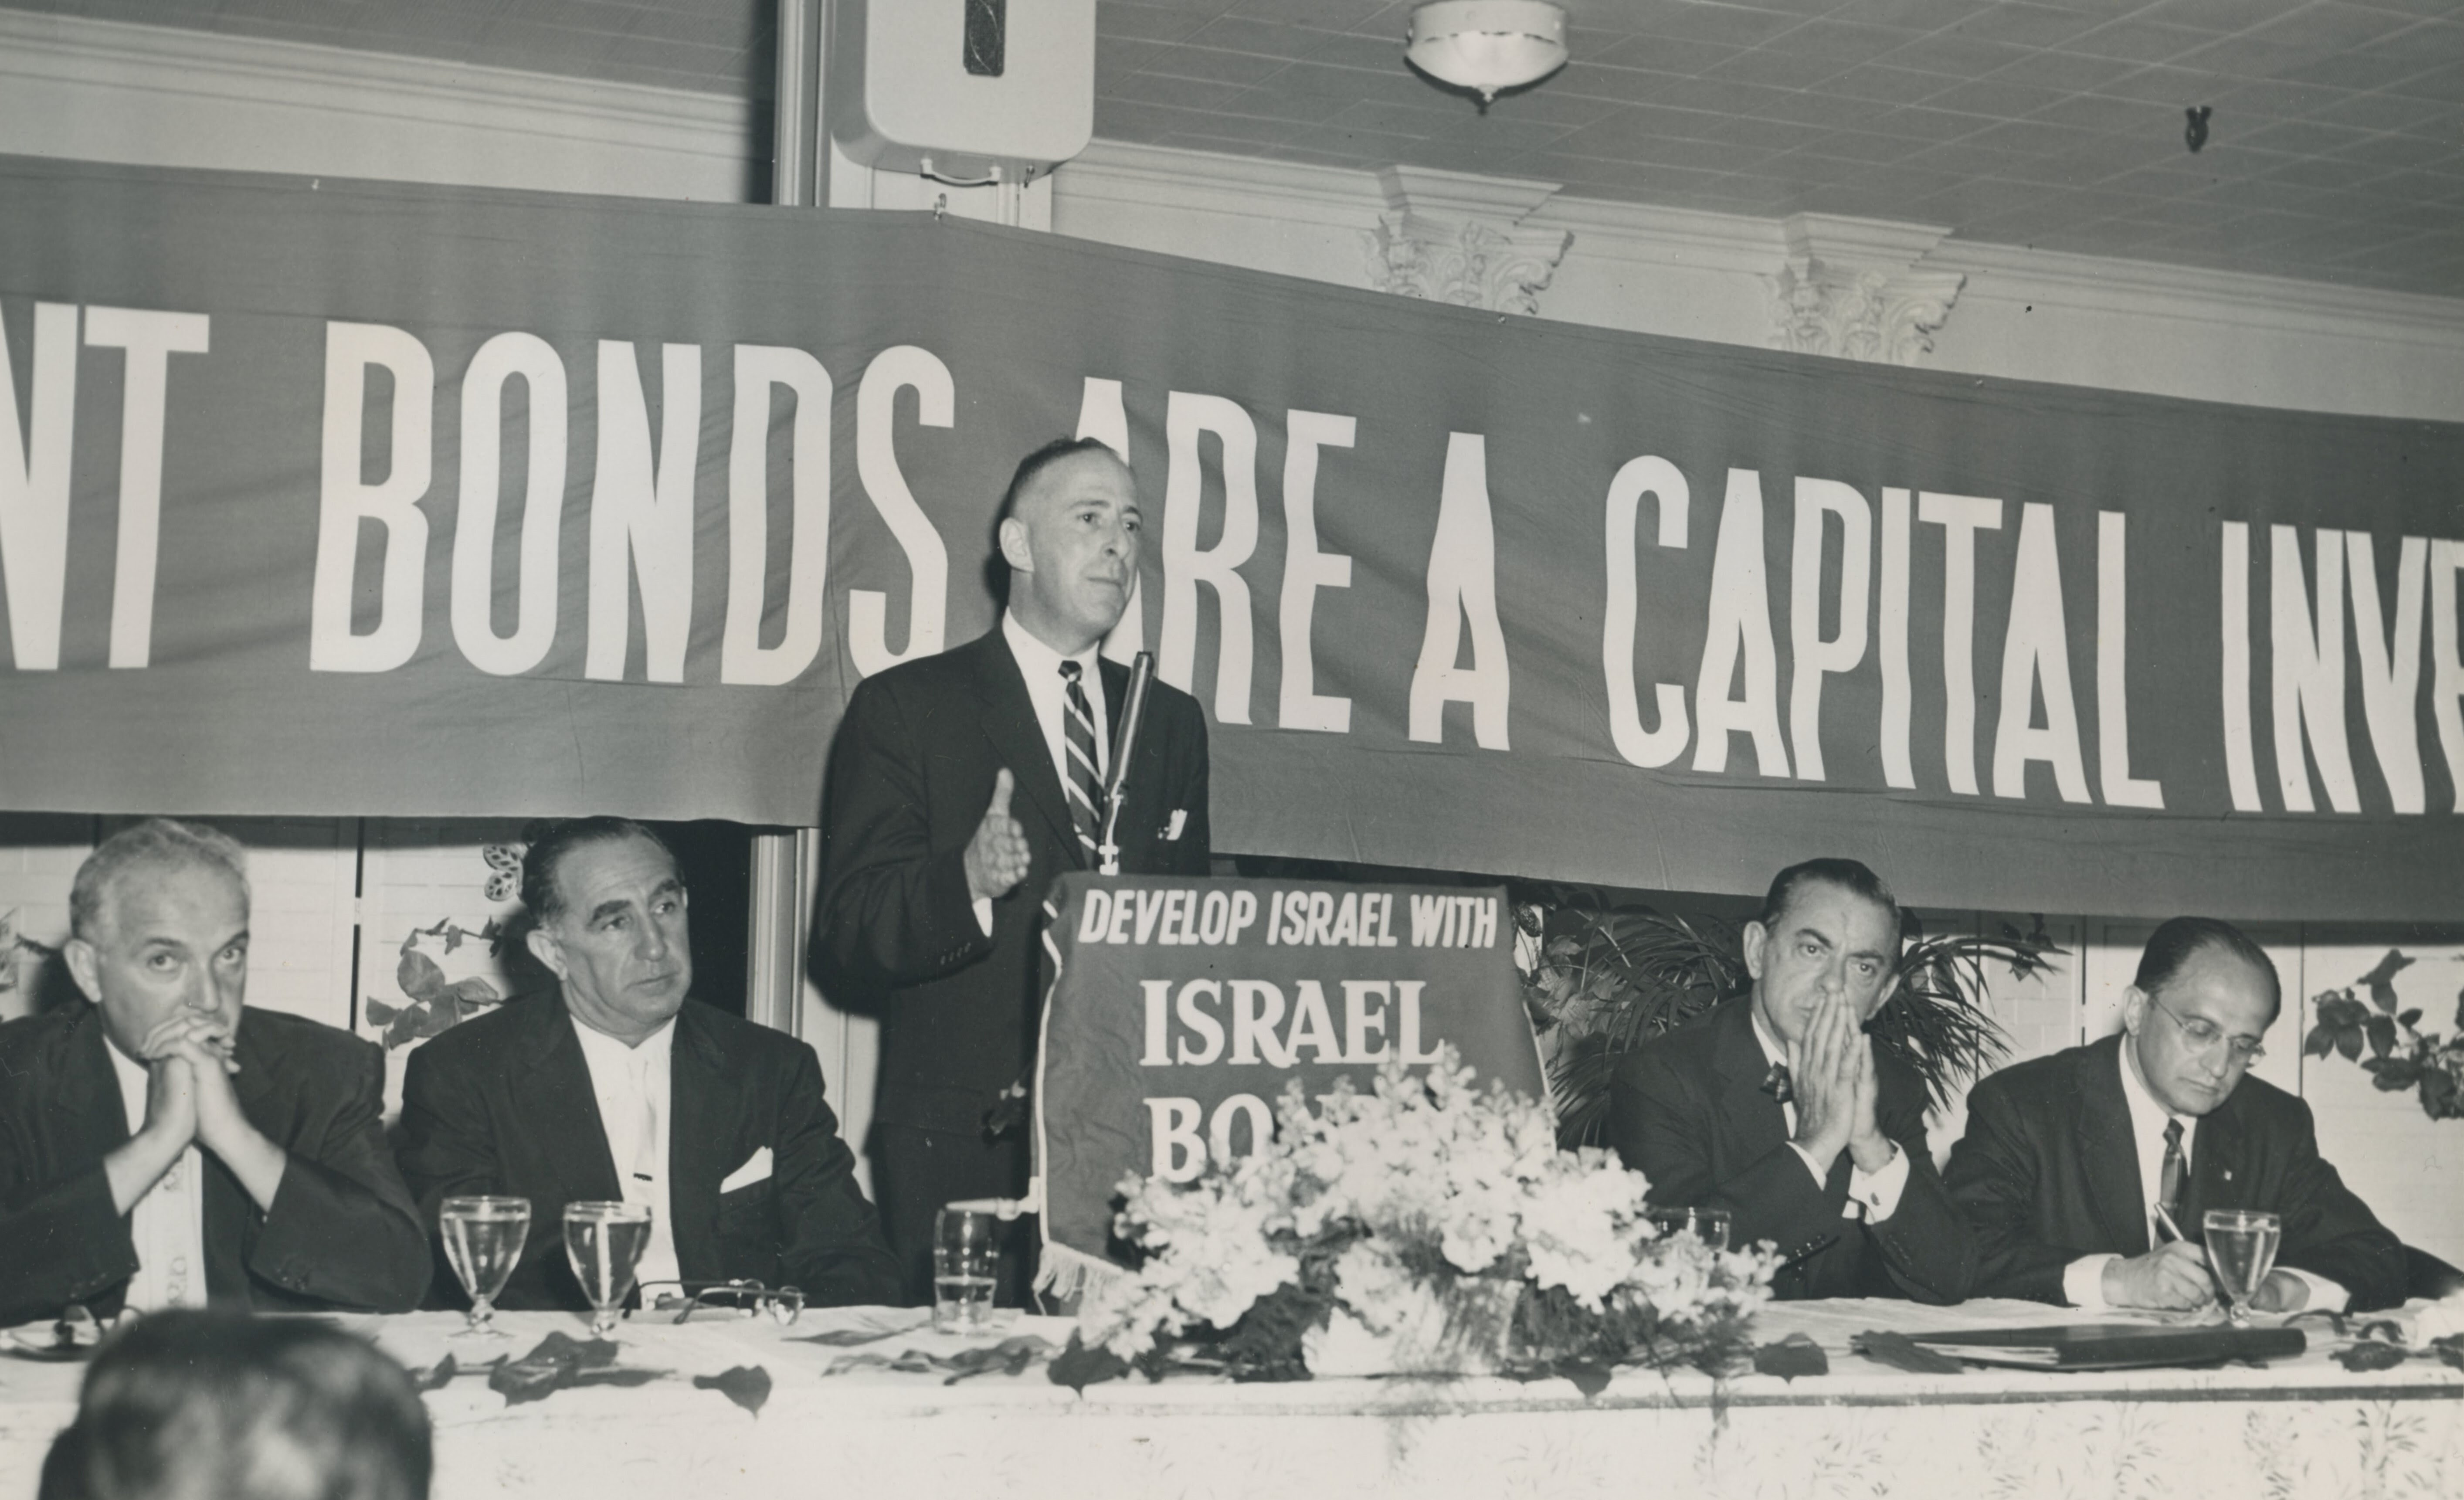 Israel Bond Drive w/Eddie Cantor